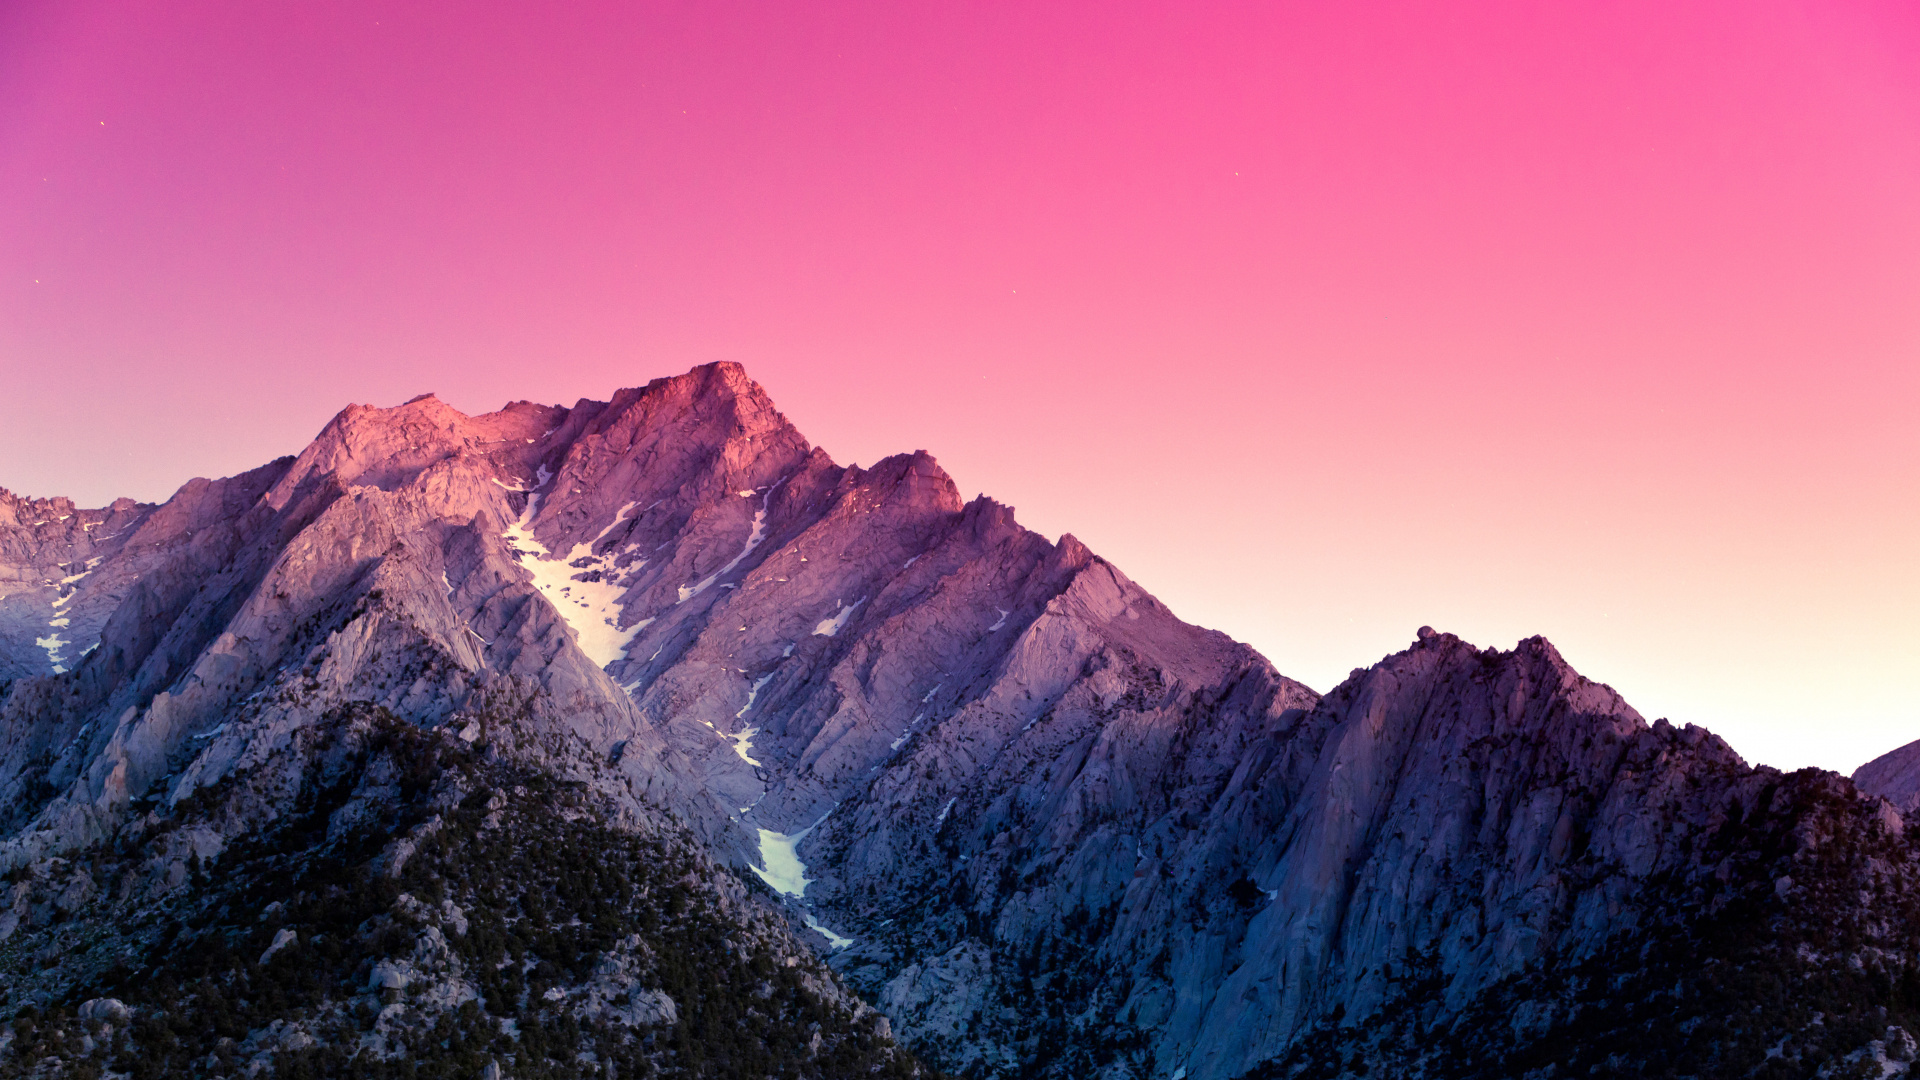 Montaña Rocosa Marrón y Gris Bajo un Cielo Azul Durante el Día. Wallpaper in 1920x1080 Resolution